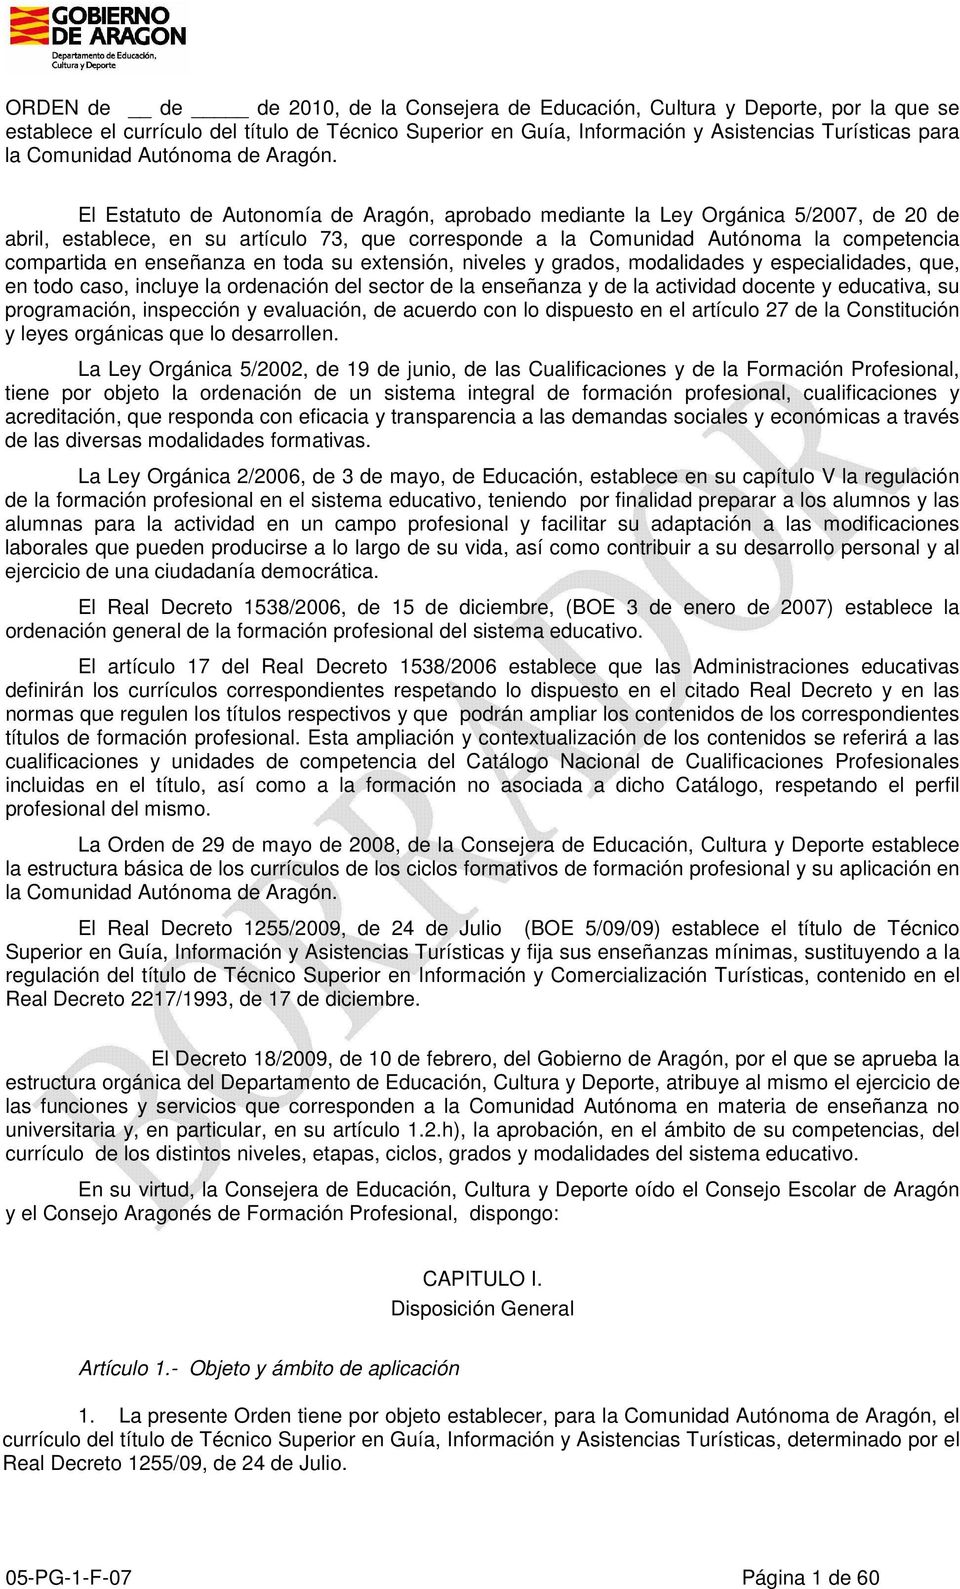 El Estatuto de Autonomía de Aragón, aprobado mediante la Ley Orgánica 5/2007, de 20 de abril, establece, en su artículo 73, que corresponde a la Comunidad Autónoma la competencia compartida en